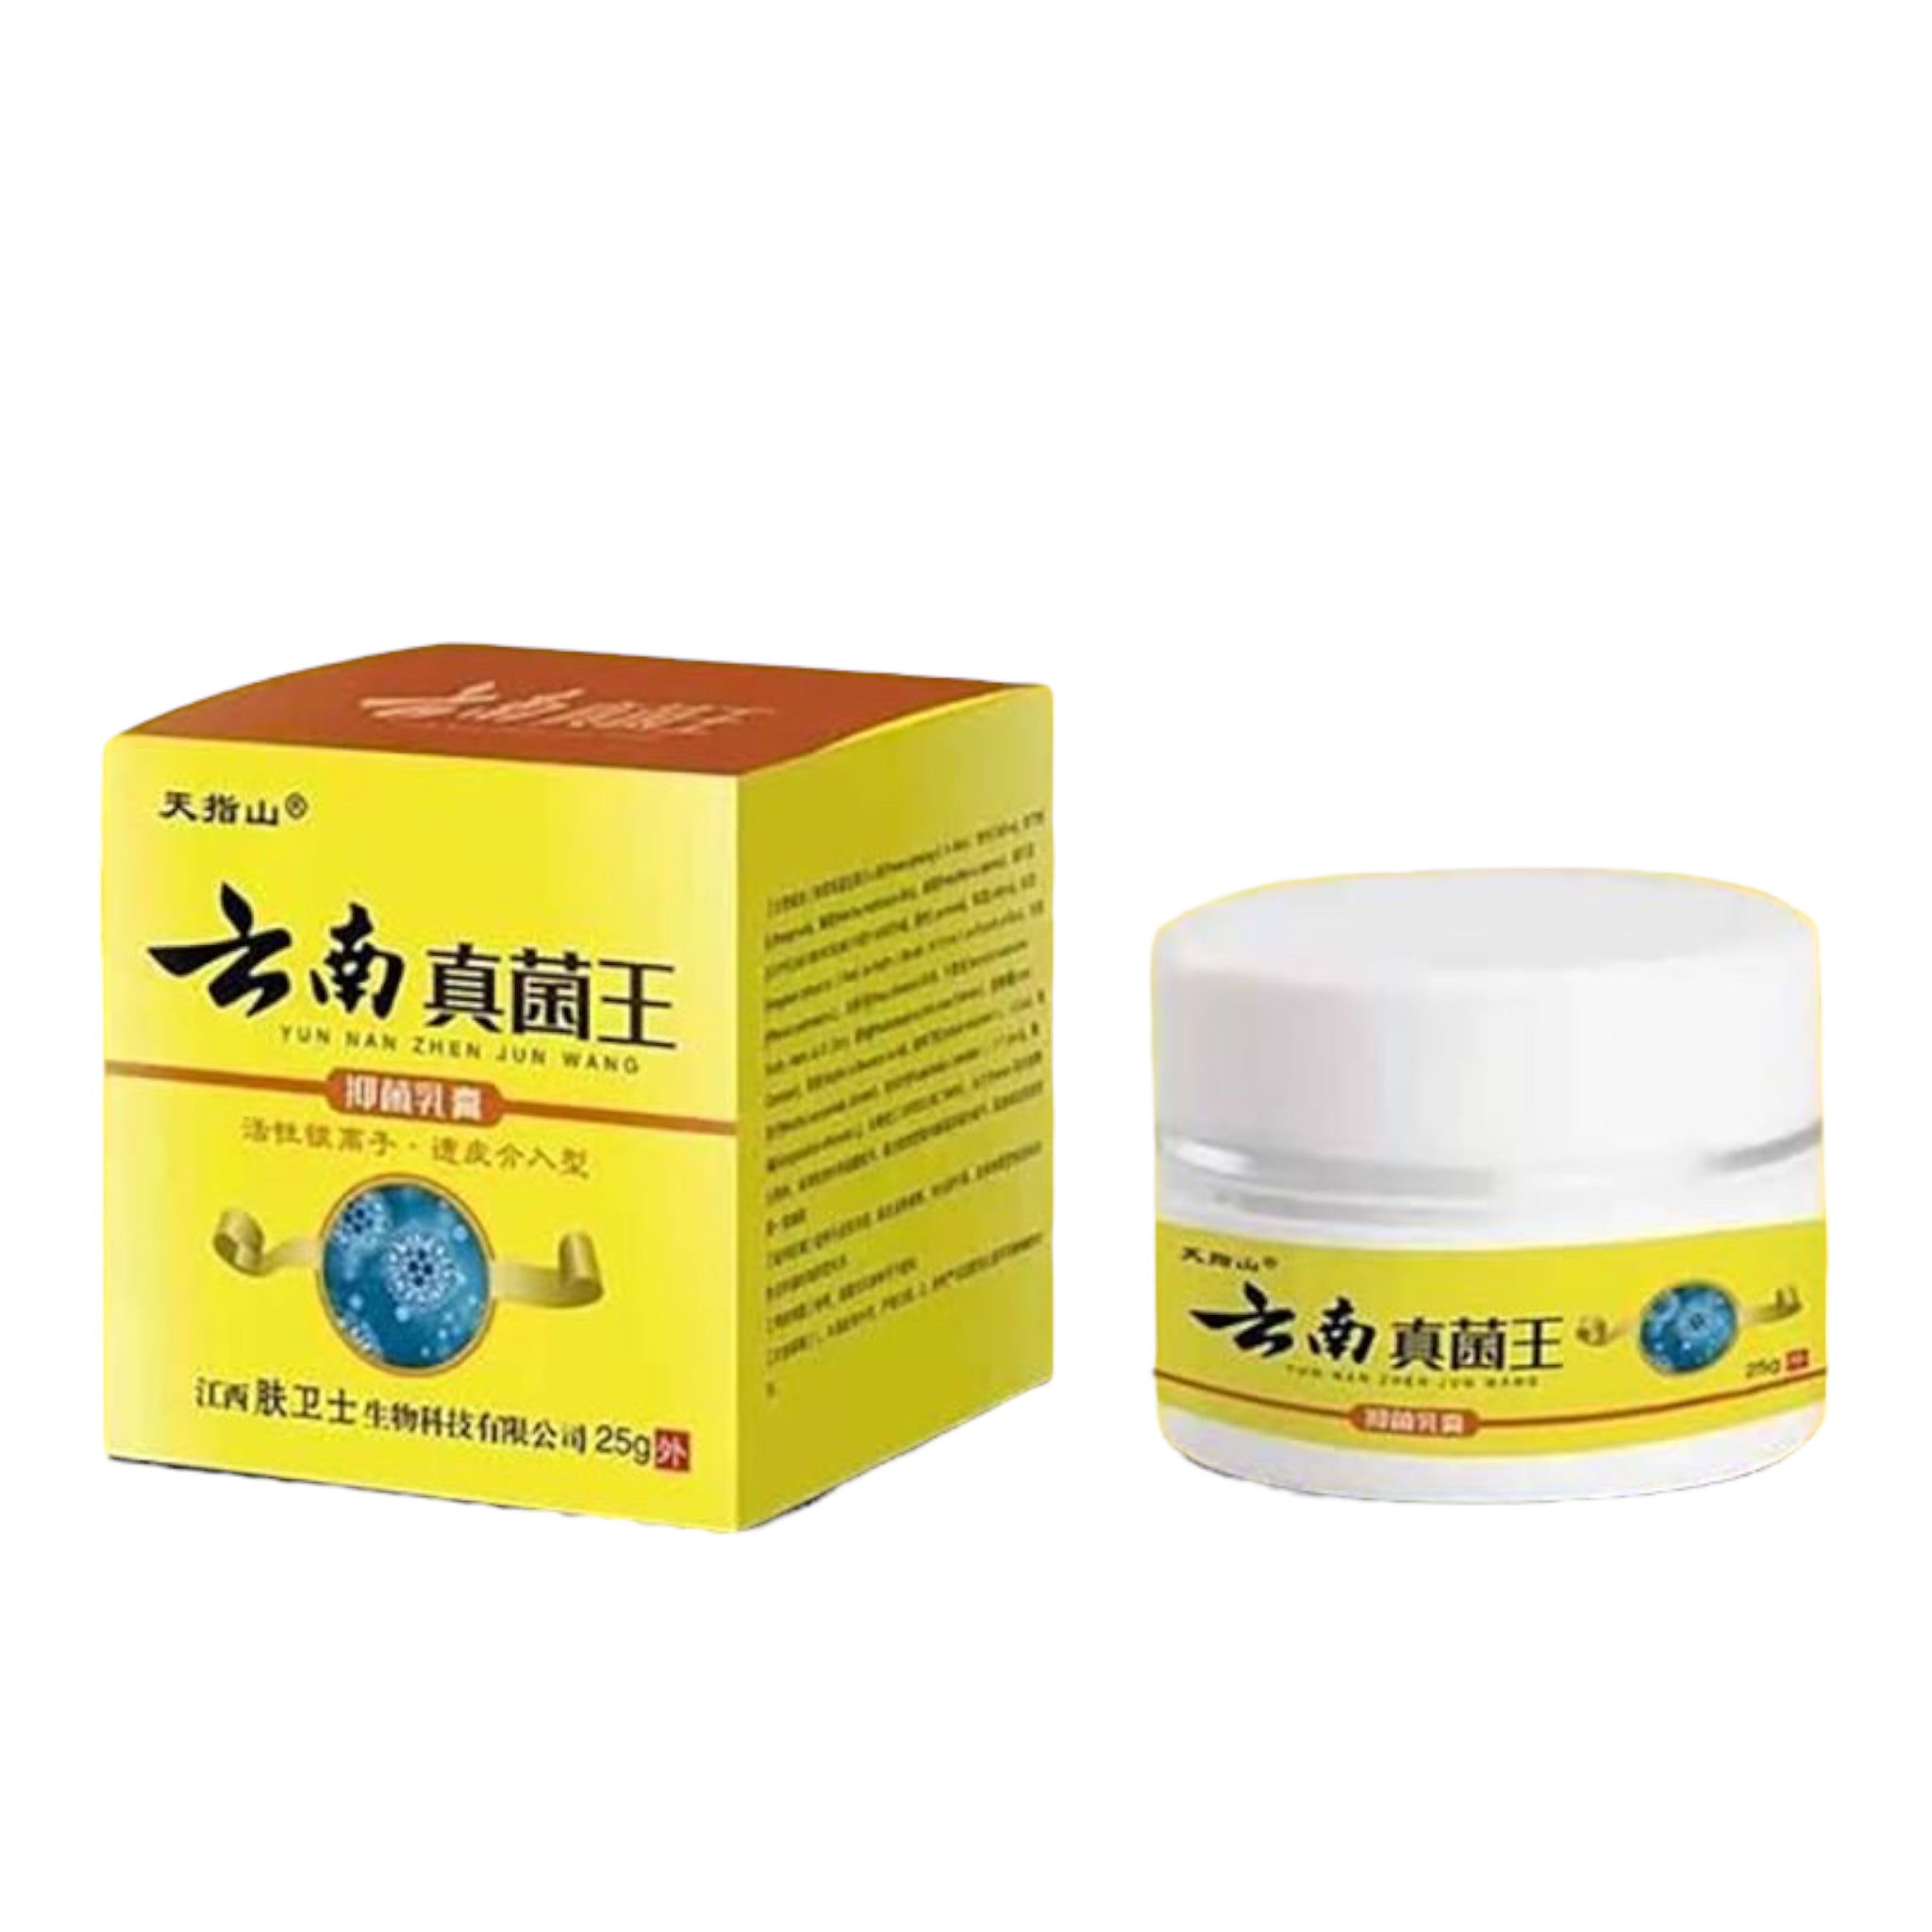 Tianzhishan Yun Nan Zhen Jun Wang Itch Relief Cream 25g